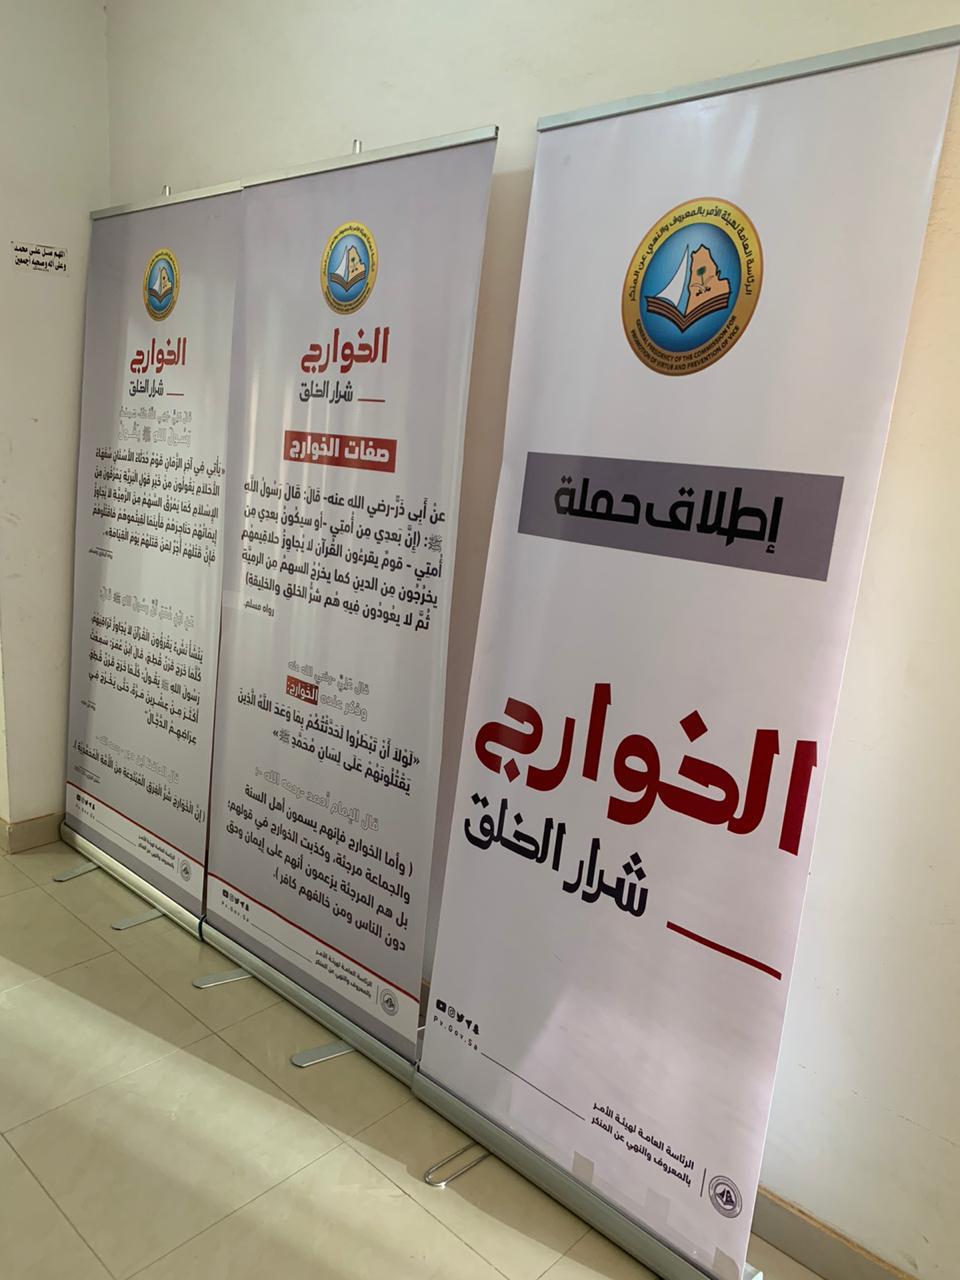 هيئة محافظة الغاط تعرض المحتوى التوعوي لحملة “الخوارج شرار الخلق” بقيادة الدوريات الأمنية